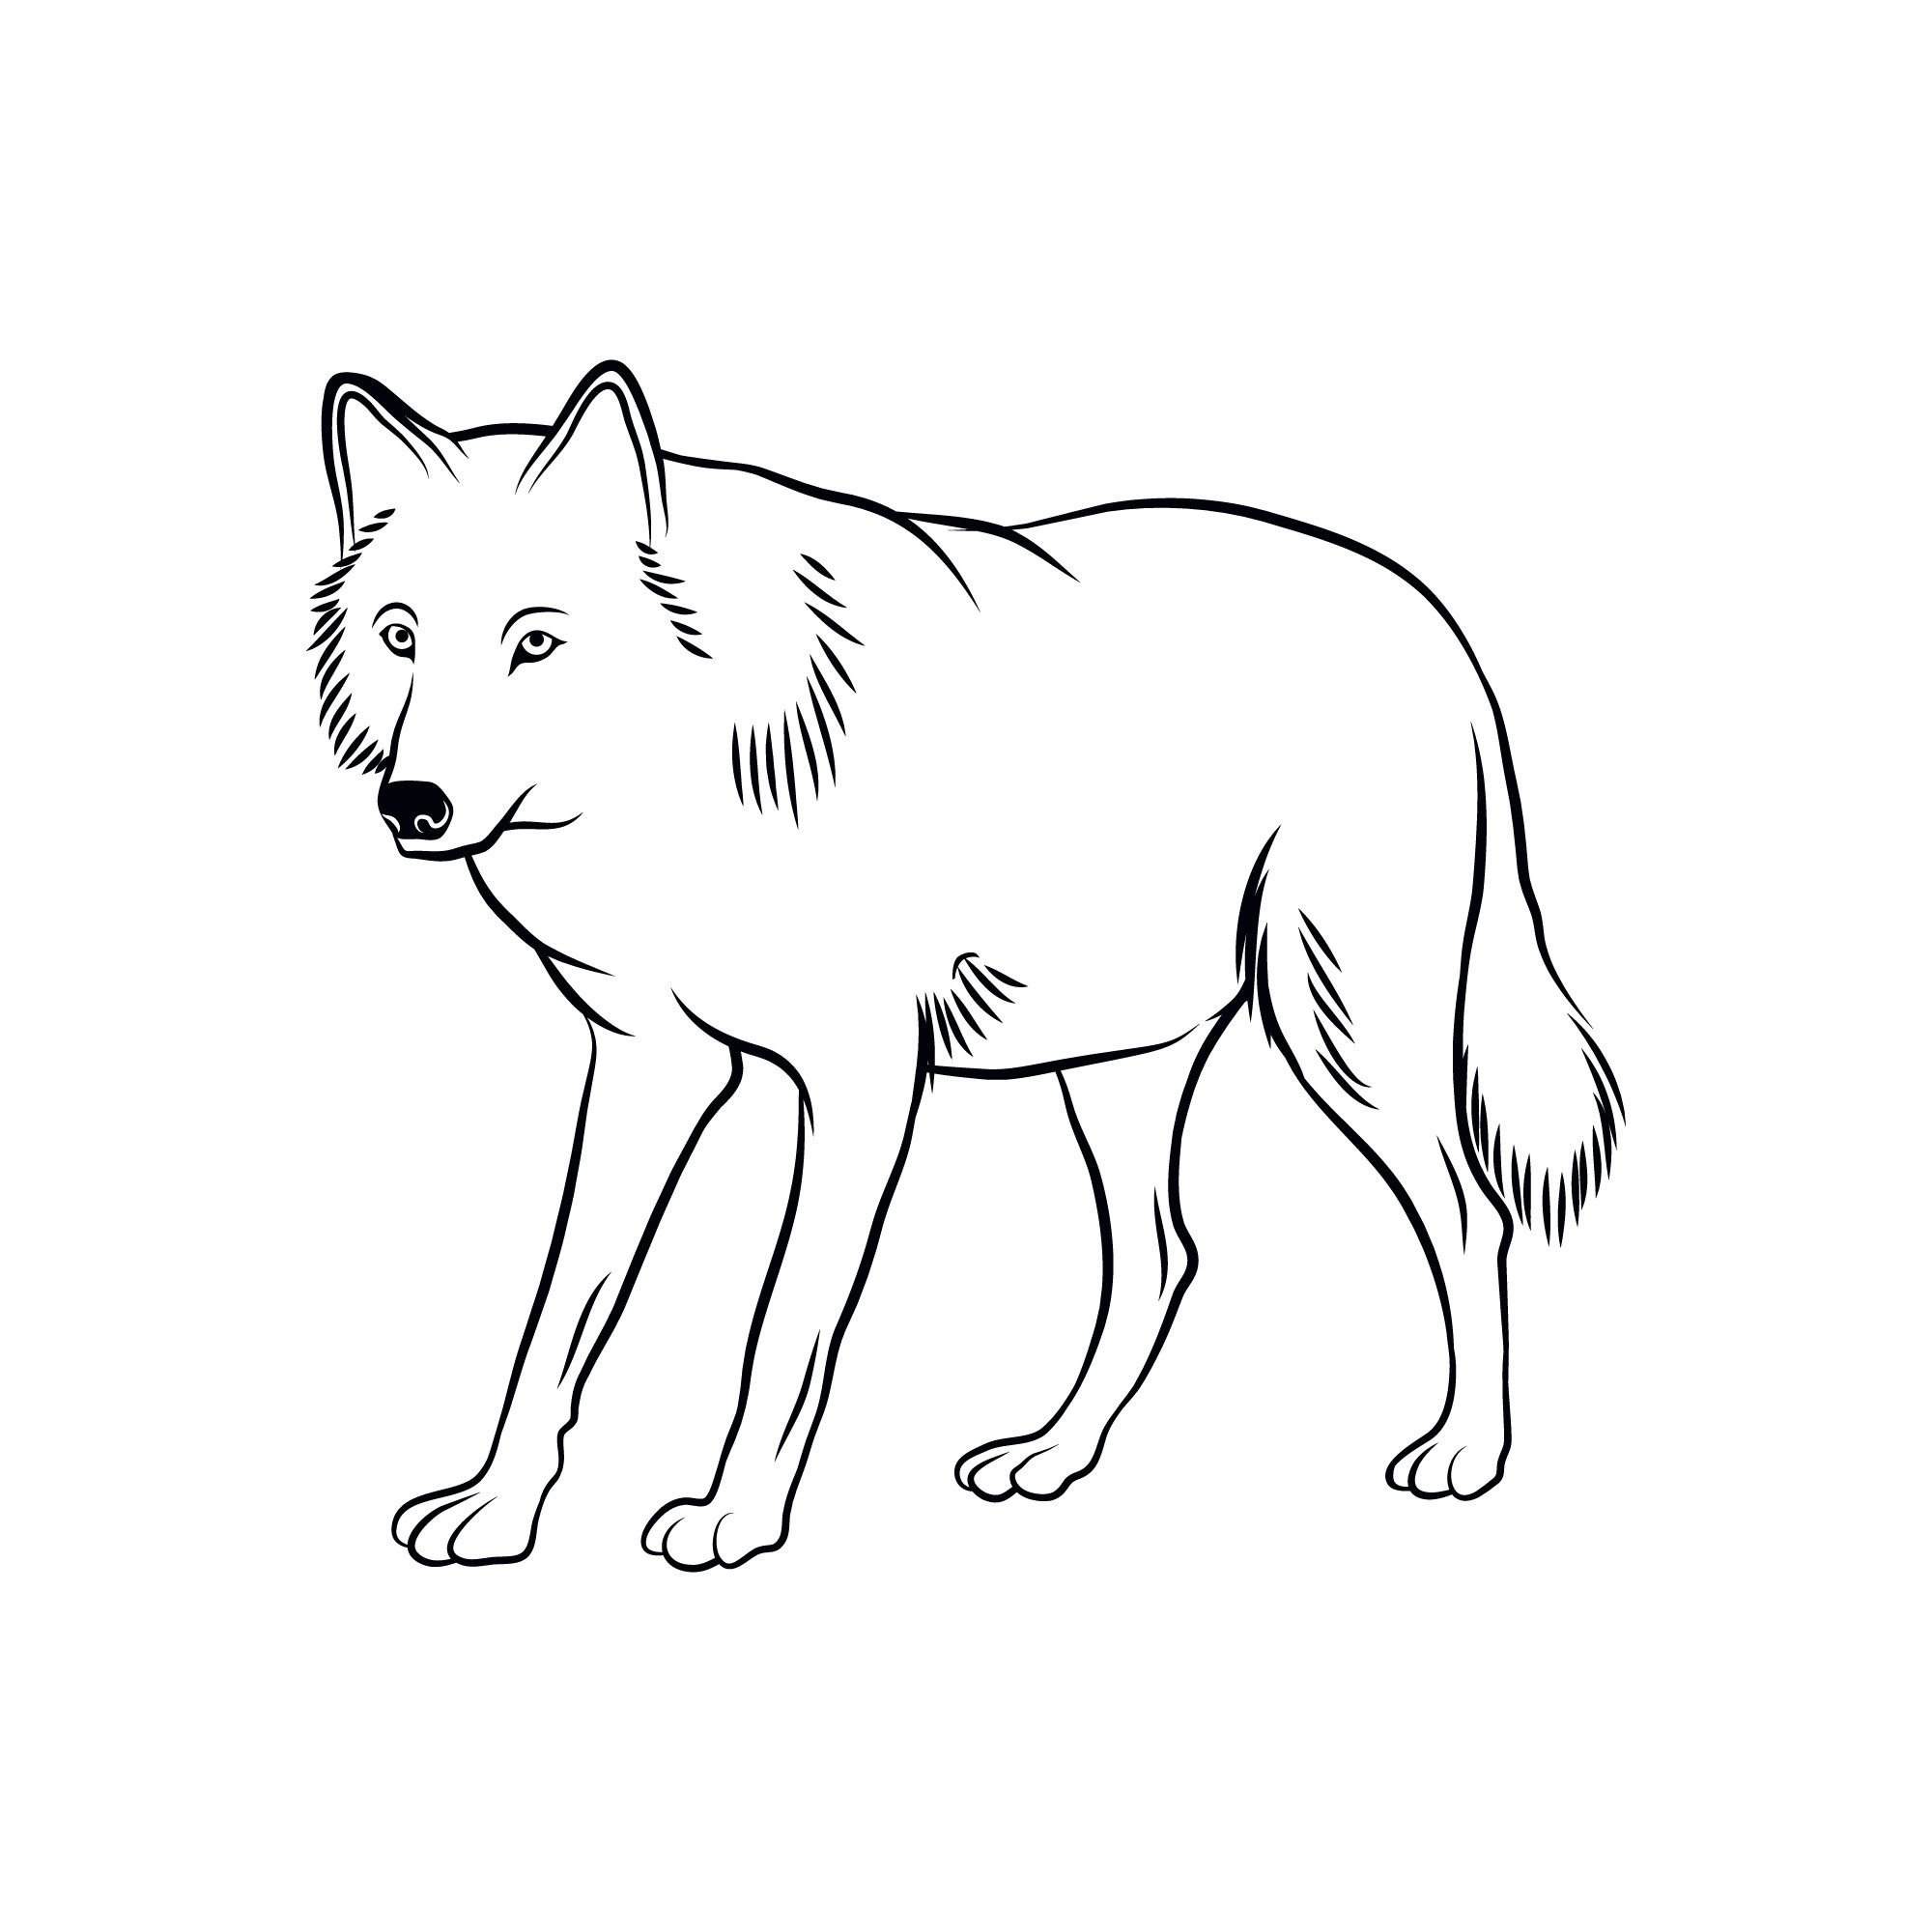 Раскраска для детей: контур серого волка